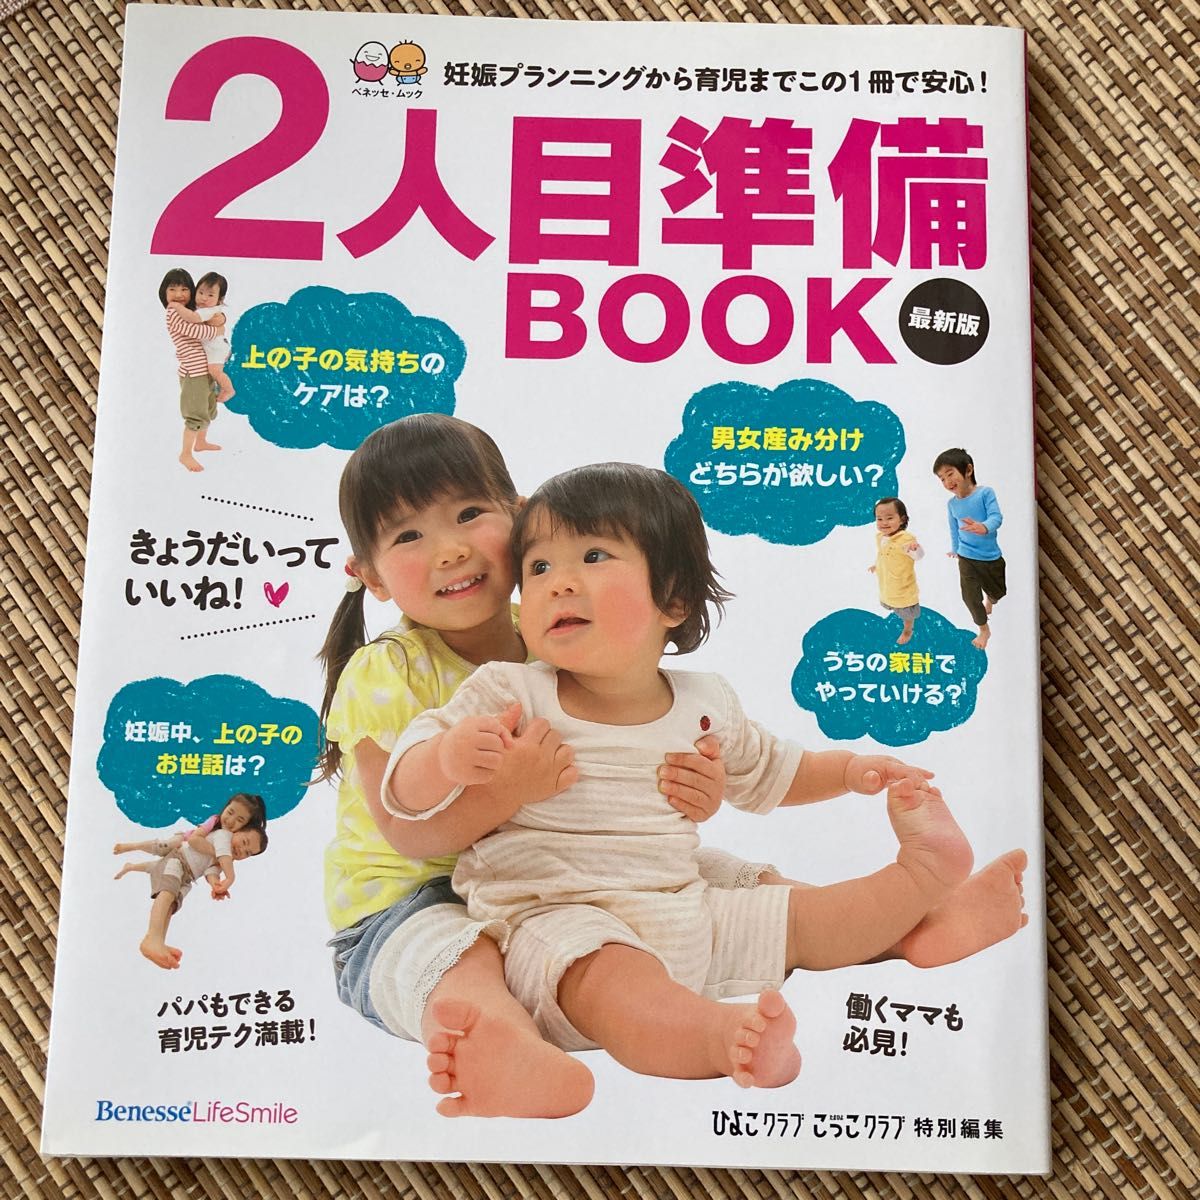 2人目準備BOOK 妊娠プランニングから育児までこの1冊で安心! 最新版 お役立ち安心シリーズ/ベネッセコーポレーション